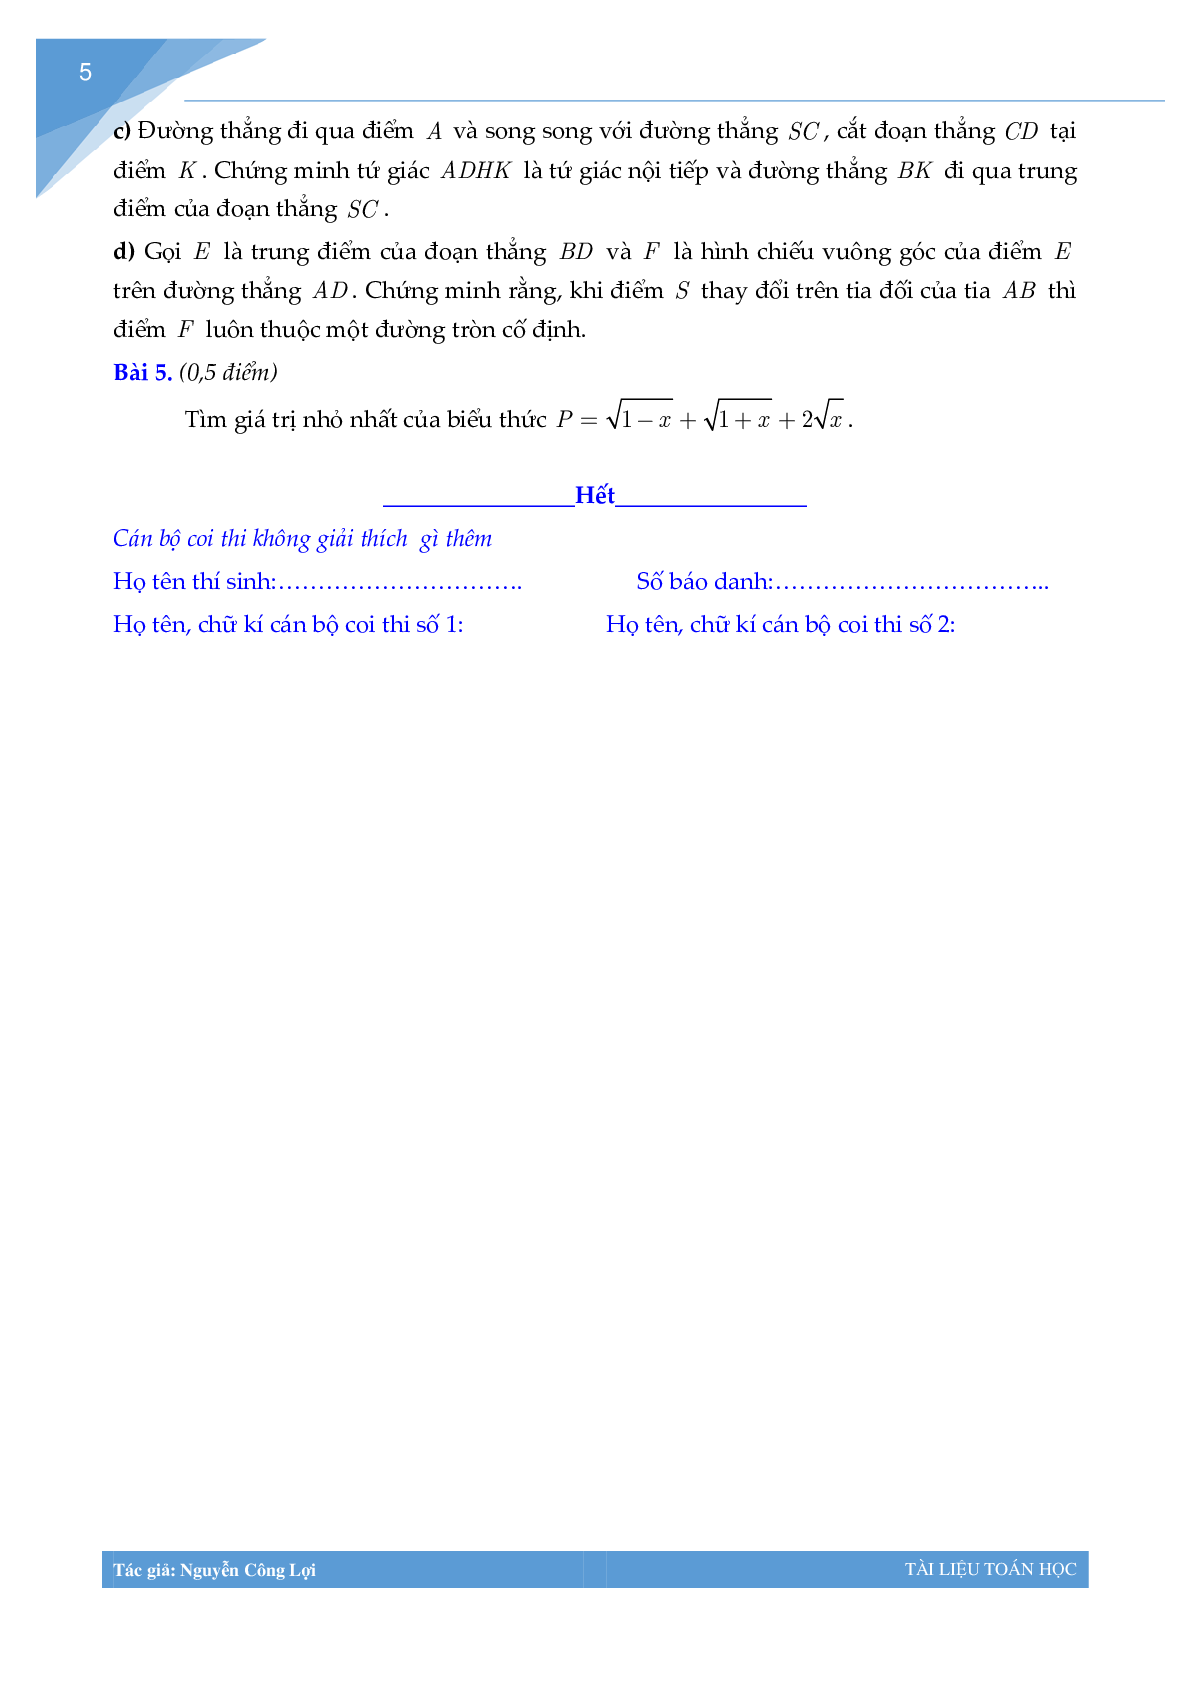 Tuyển tập đề thi vào lớp 10 môn toán Thành phố Hà Nội (trang 4)